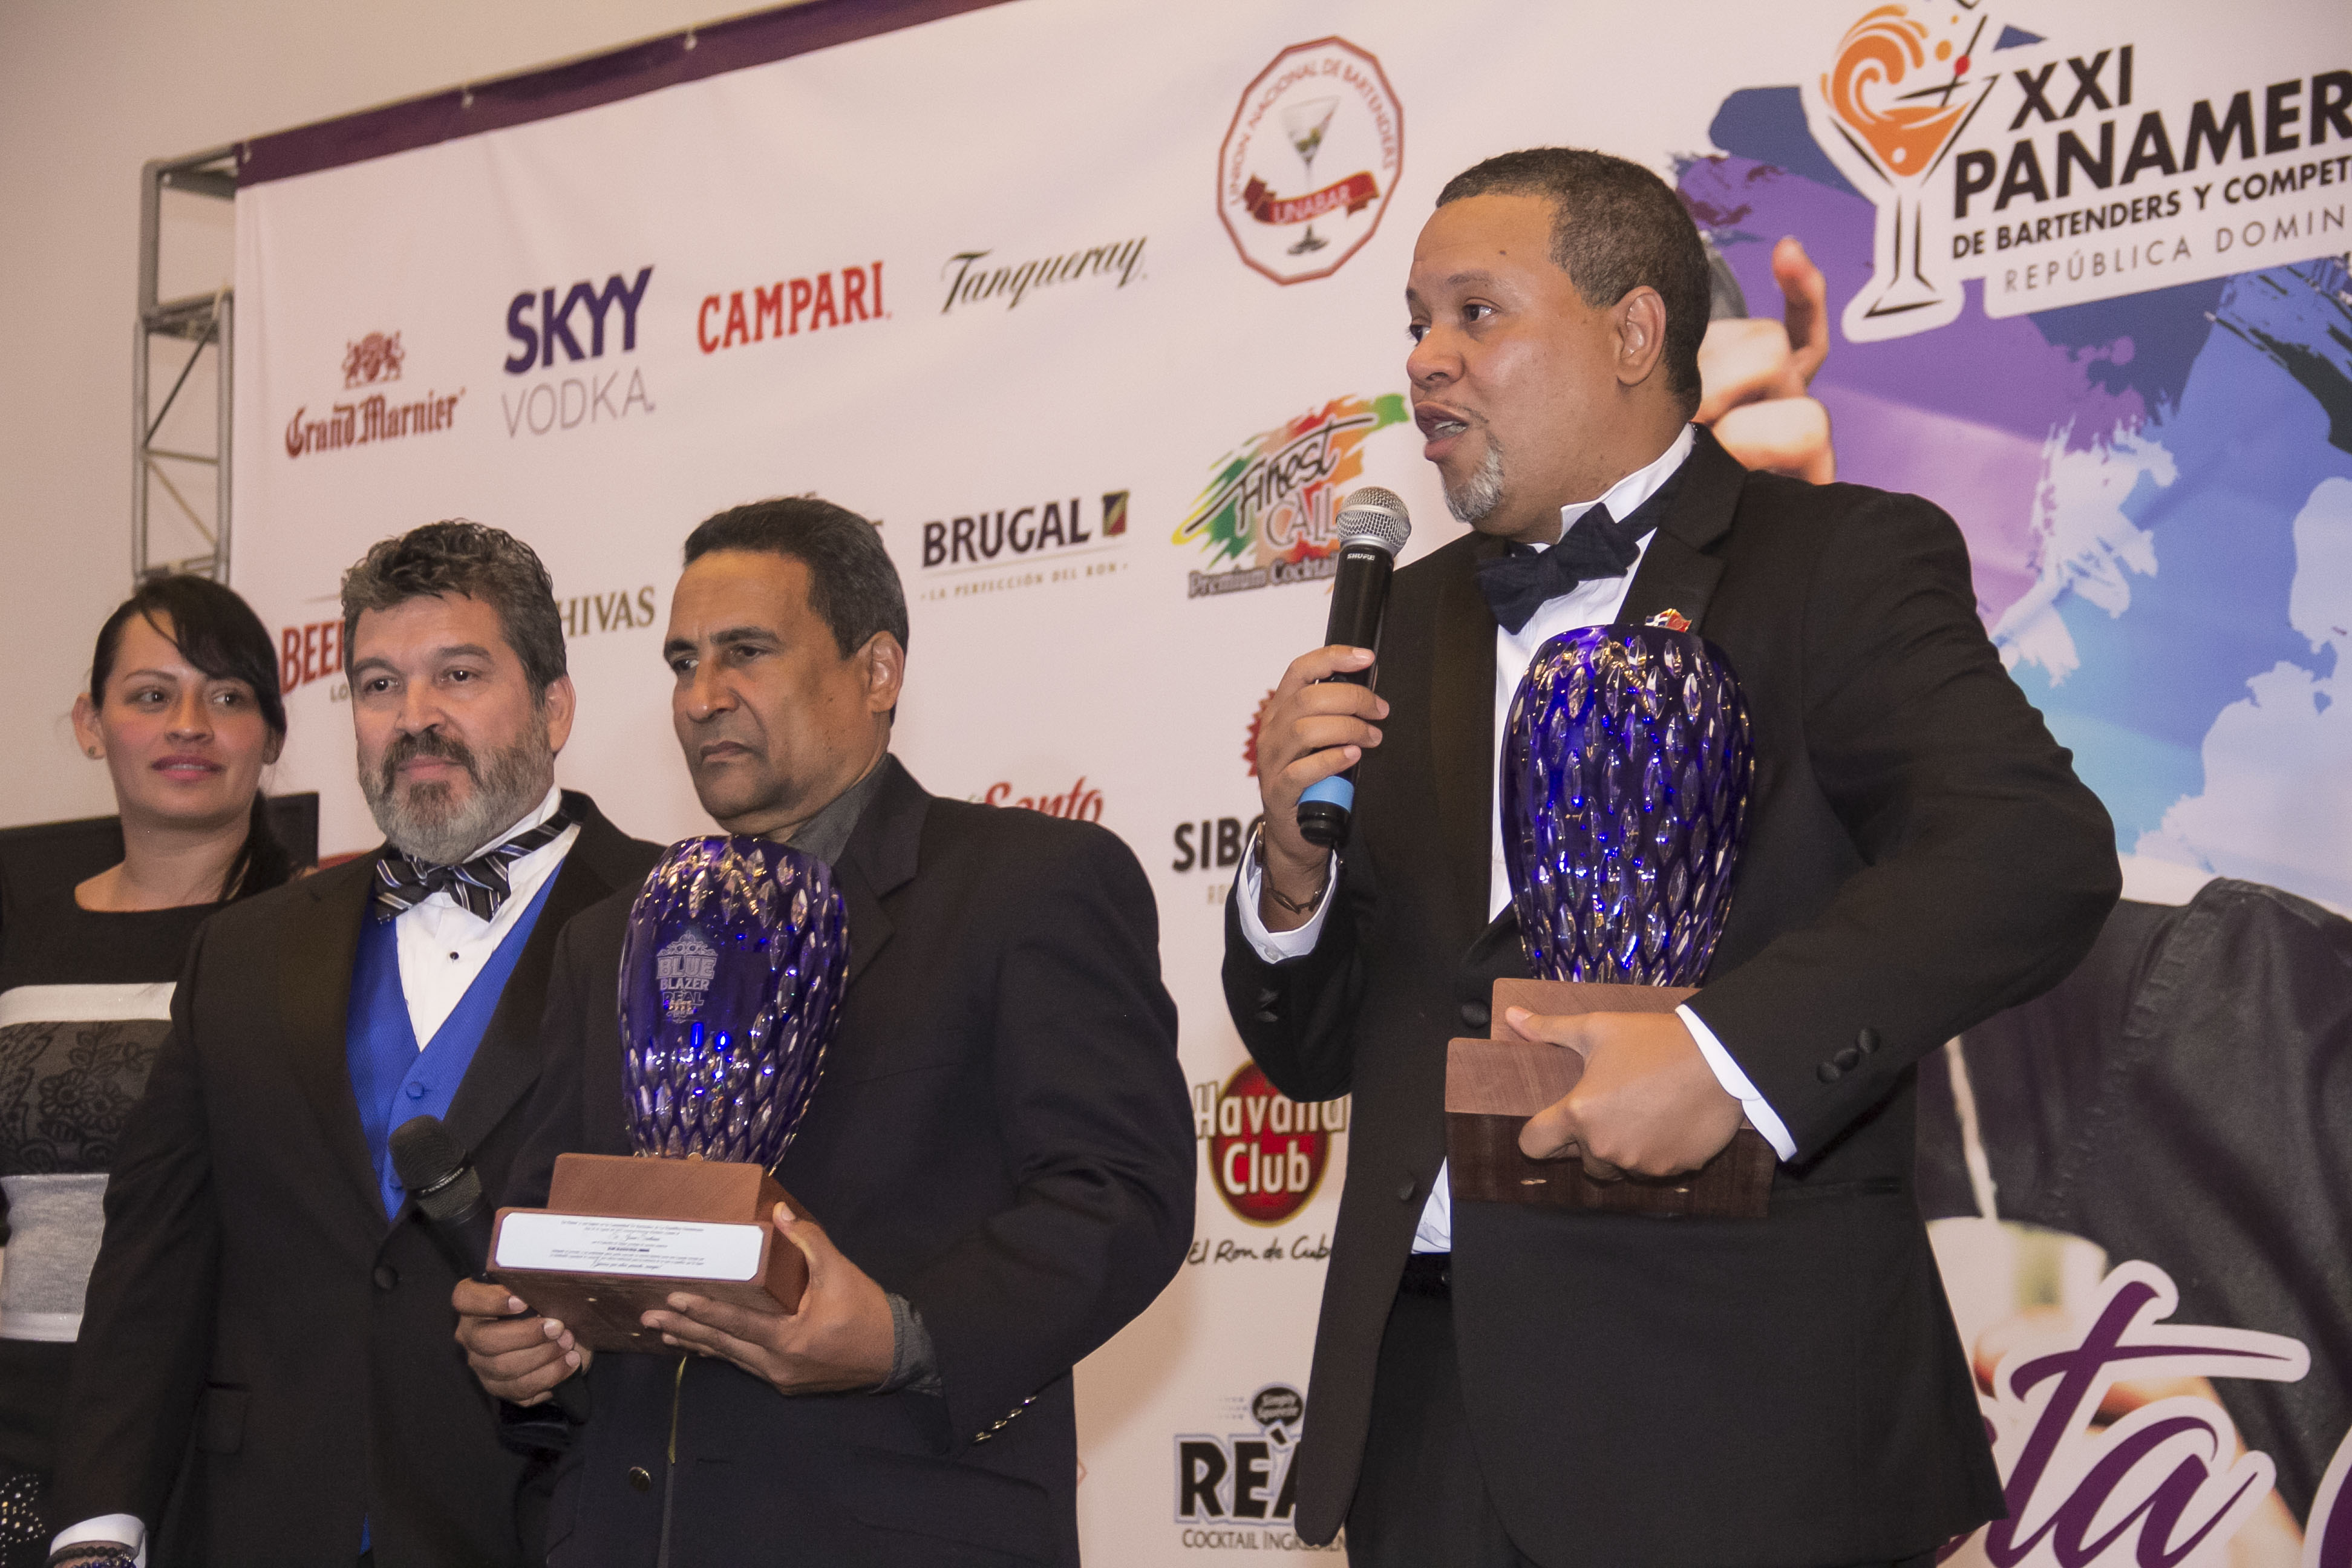  Entregan Premio The Blue Blazer Real Award en Punta Cana